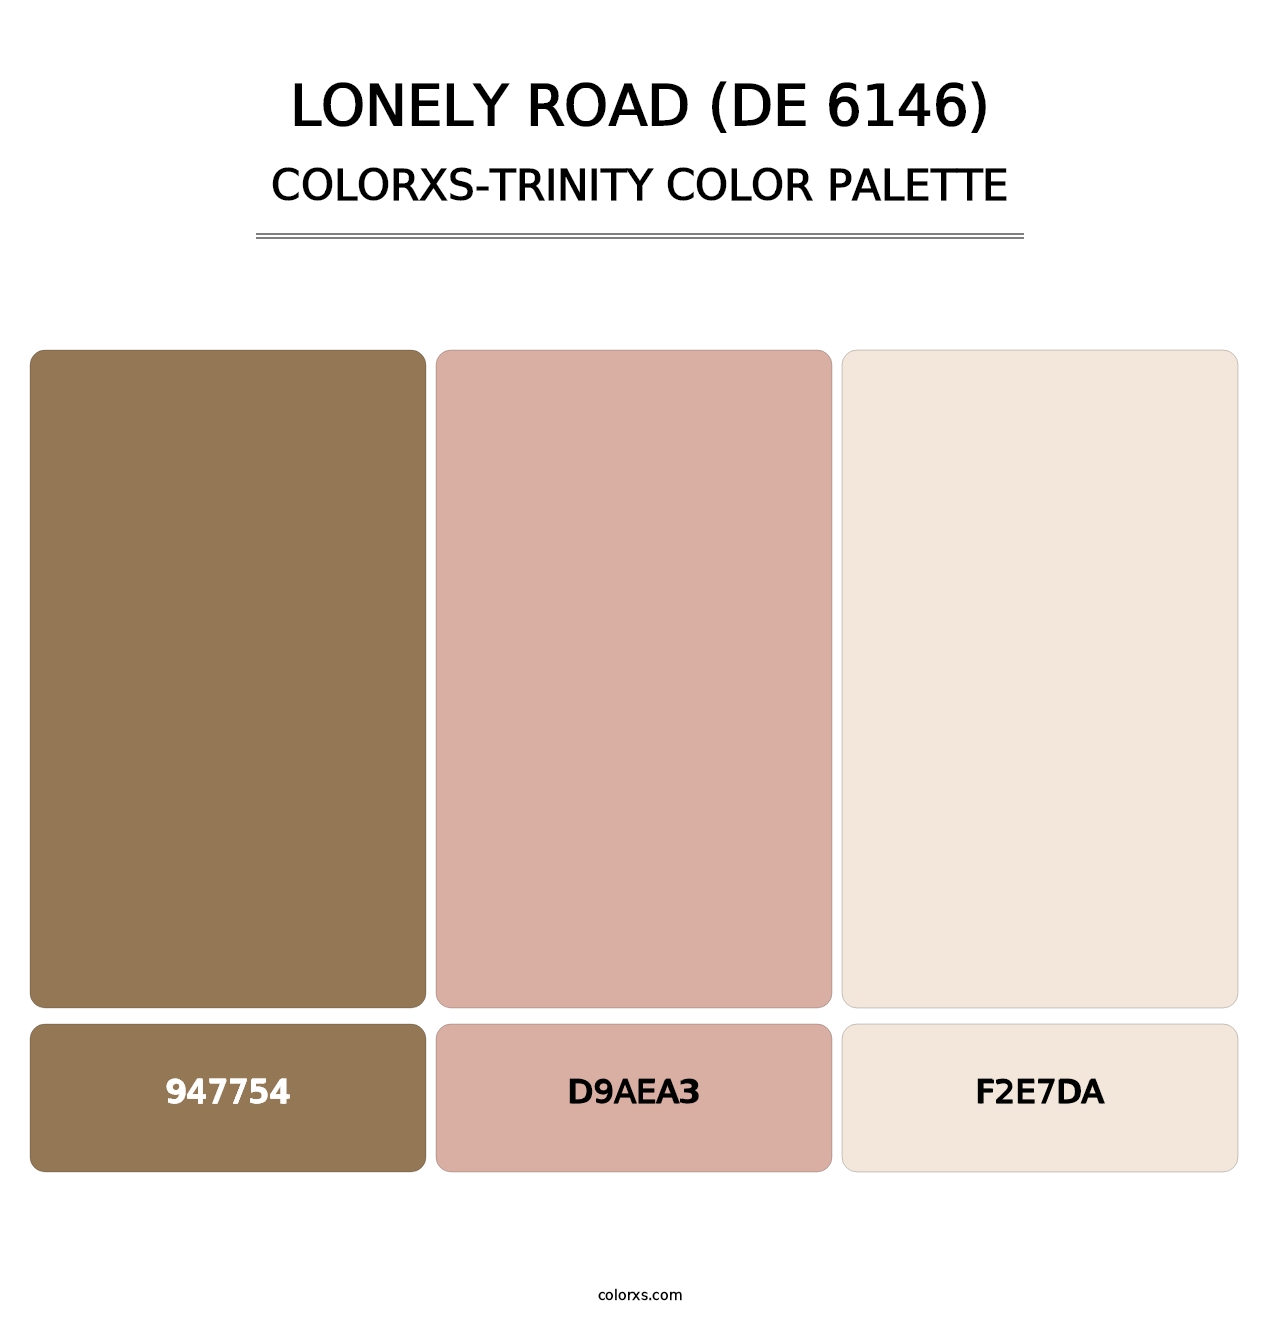 Lonely Road (DE 6146) - Colorxs Trinity Palette